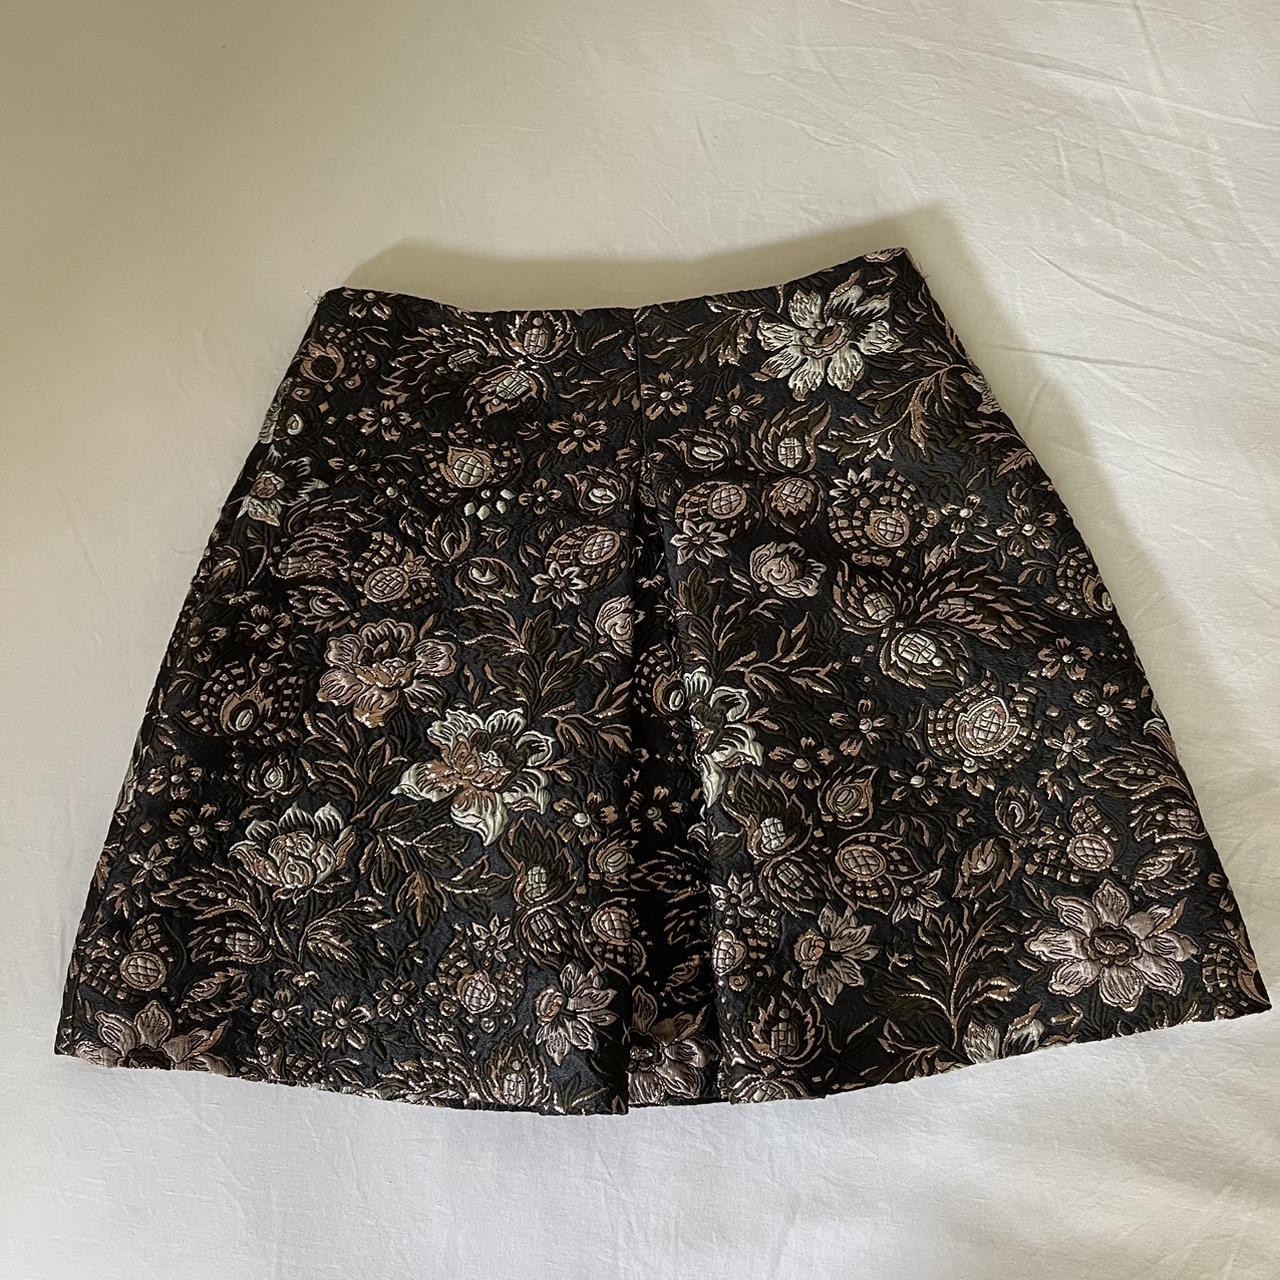 Zimmermann Silk Embroided A-Line Skirt Size 1 best... - Depop